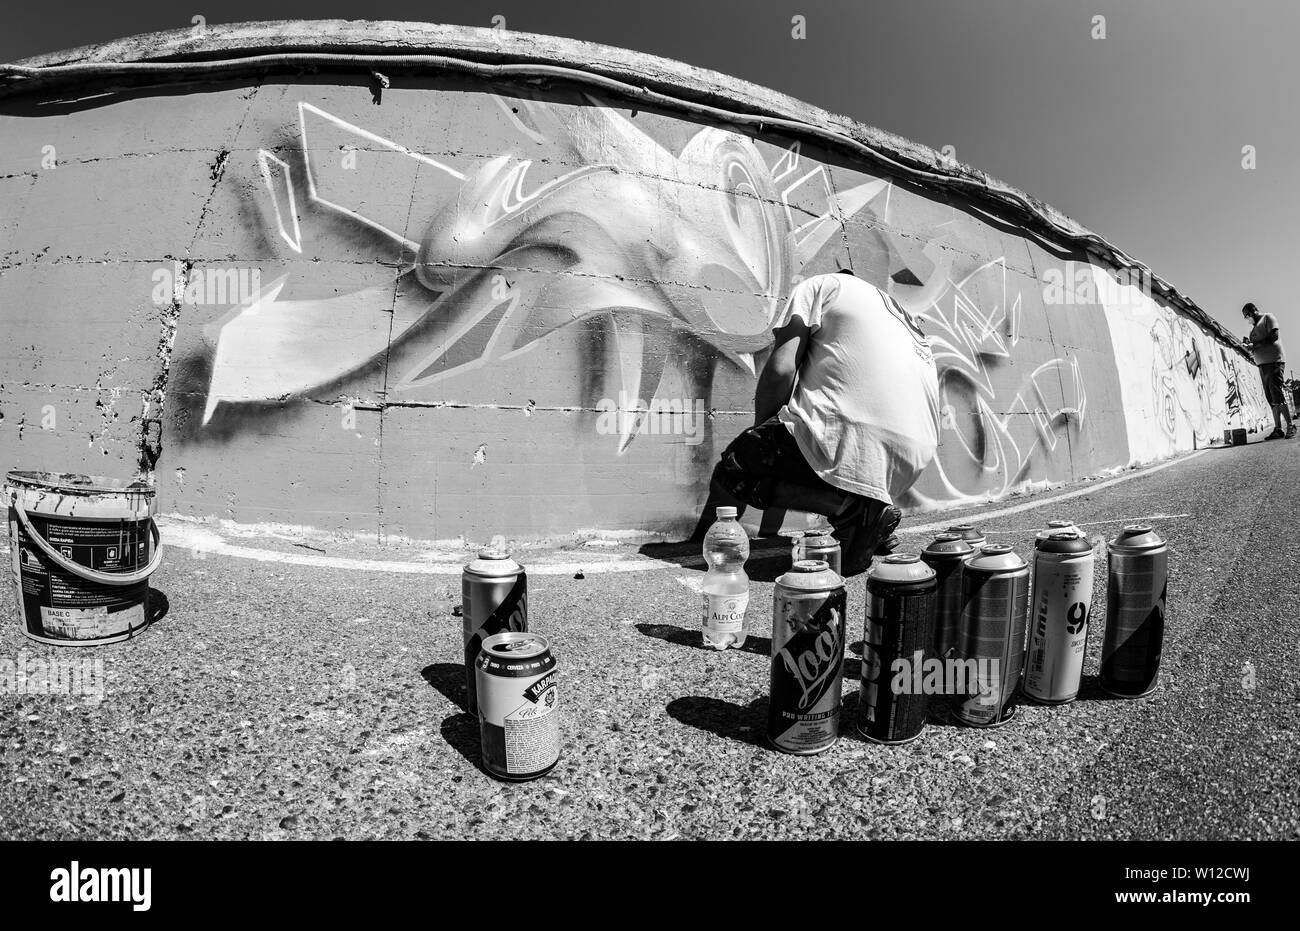 Imperia, Italien - 08/09/2018: die Mauer von Imperia Stadtzentrum, Graffiti Künstler Spray Painting Wall Art. Stockfoto